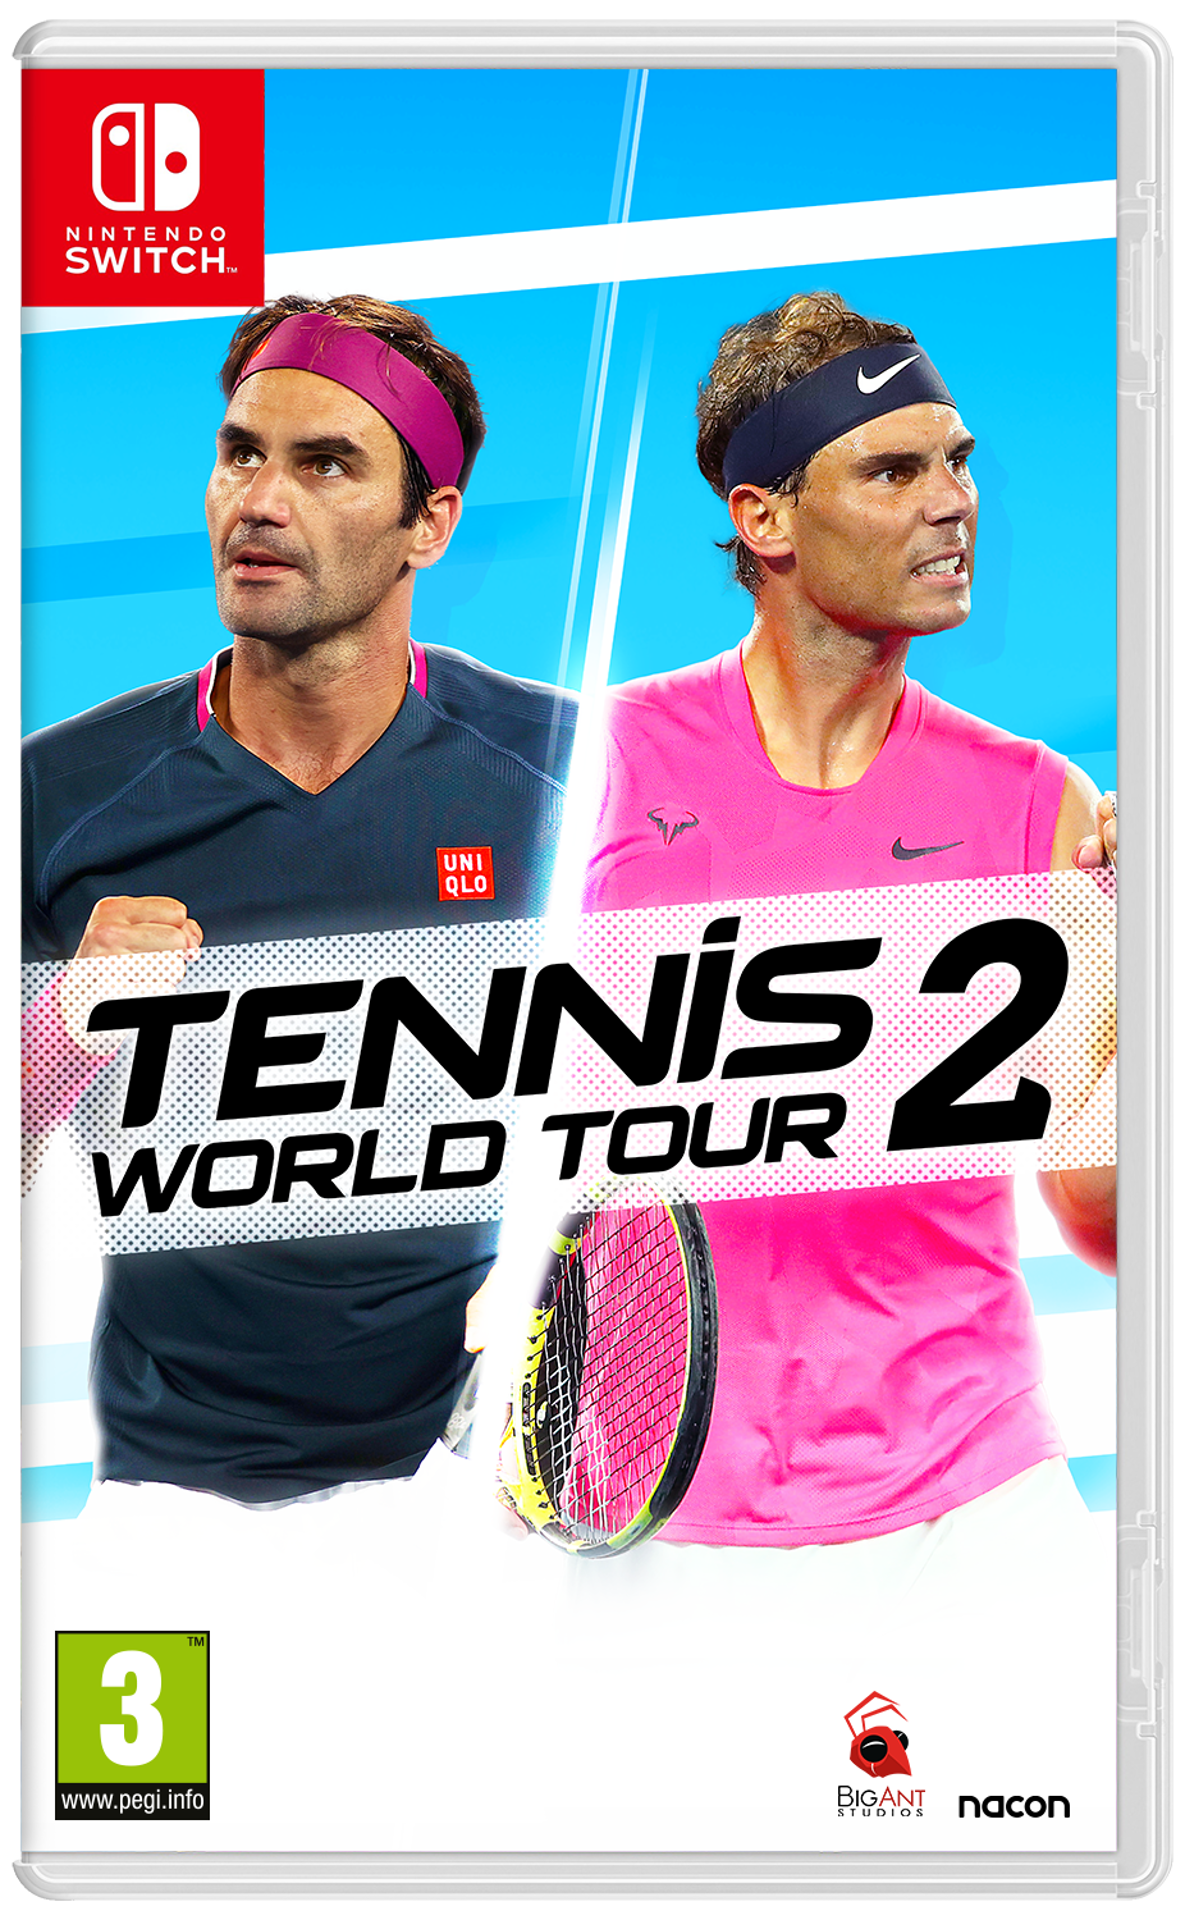 § Tennis World Tour 2